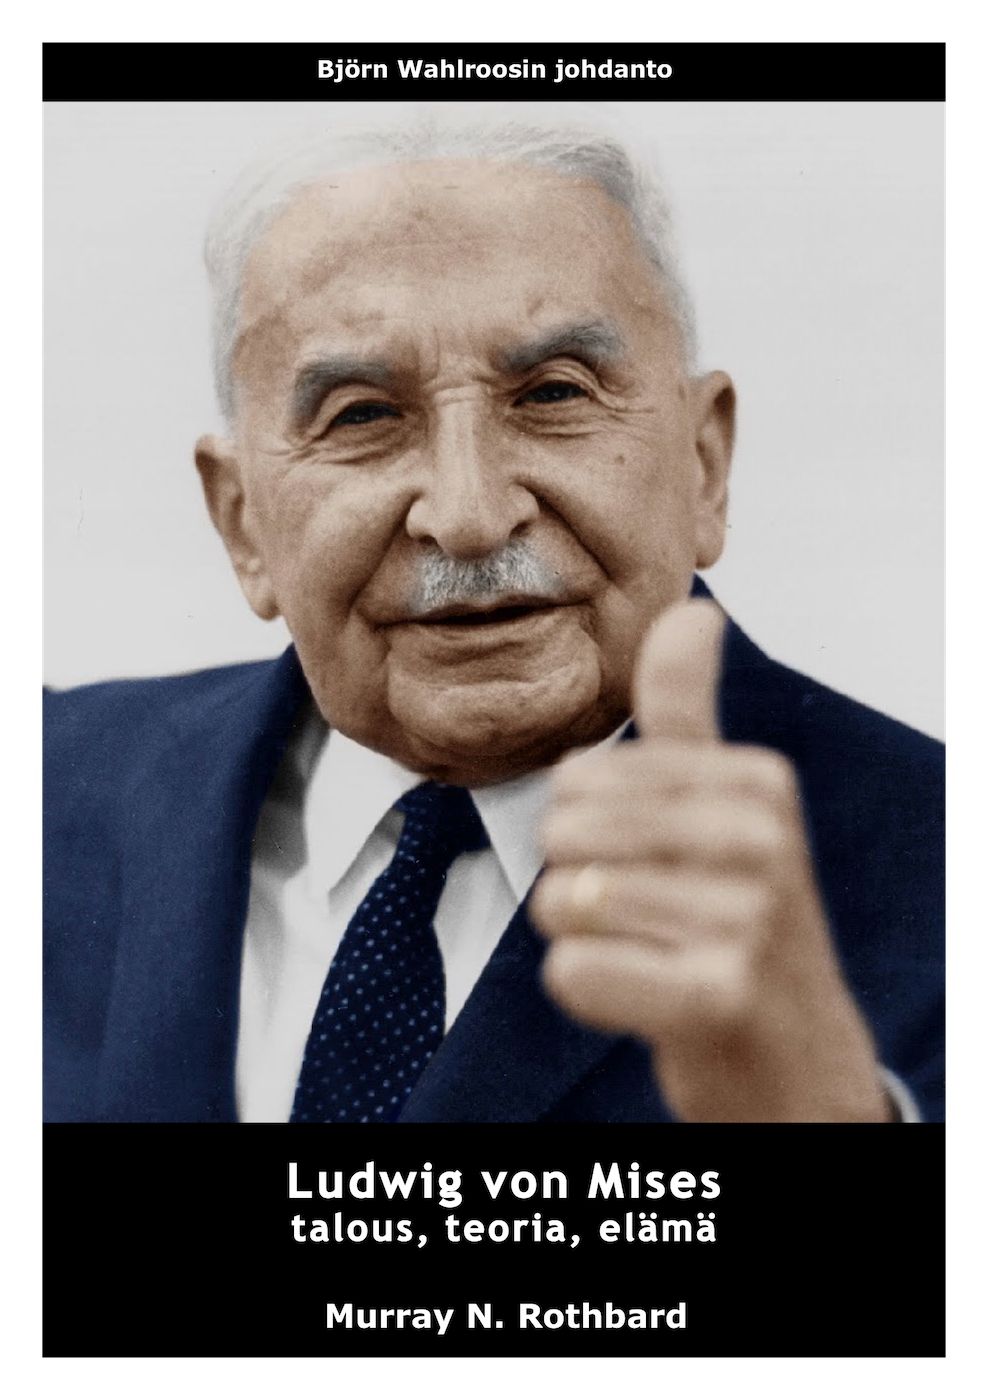 Ludwig von Mises - talous, teoria, elämä, e-bok av Murray N. Rothbard